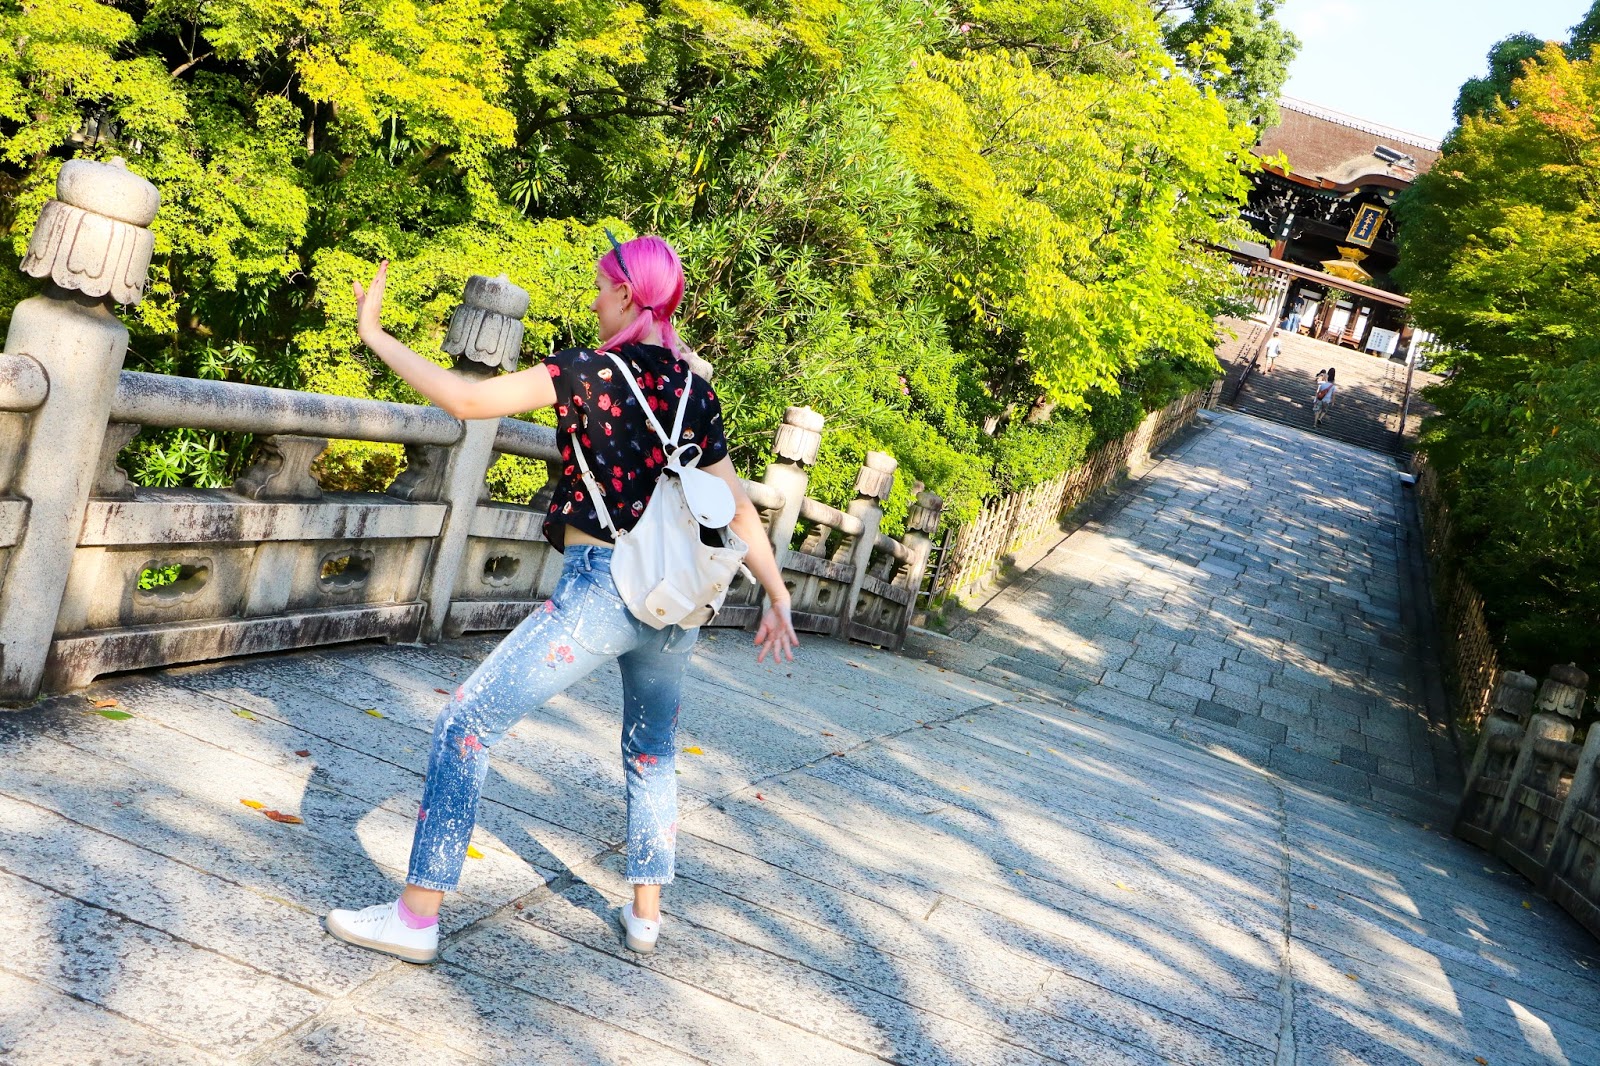 Touring Kiyomizu-dera in Kyoto Japan